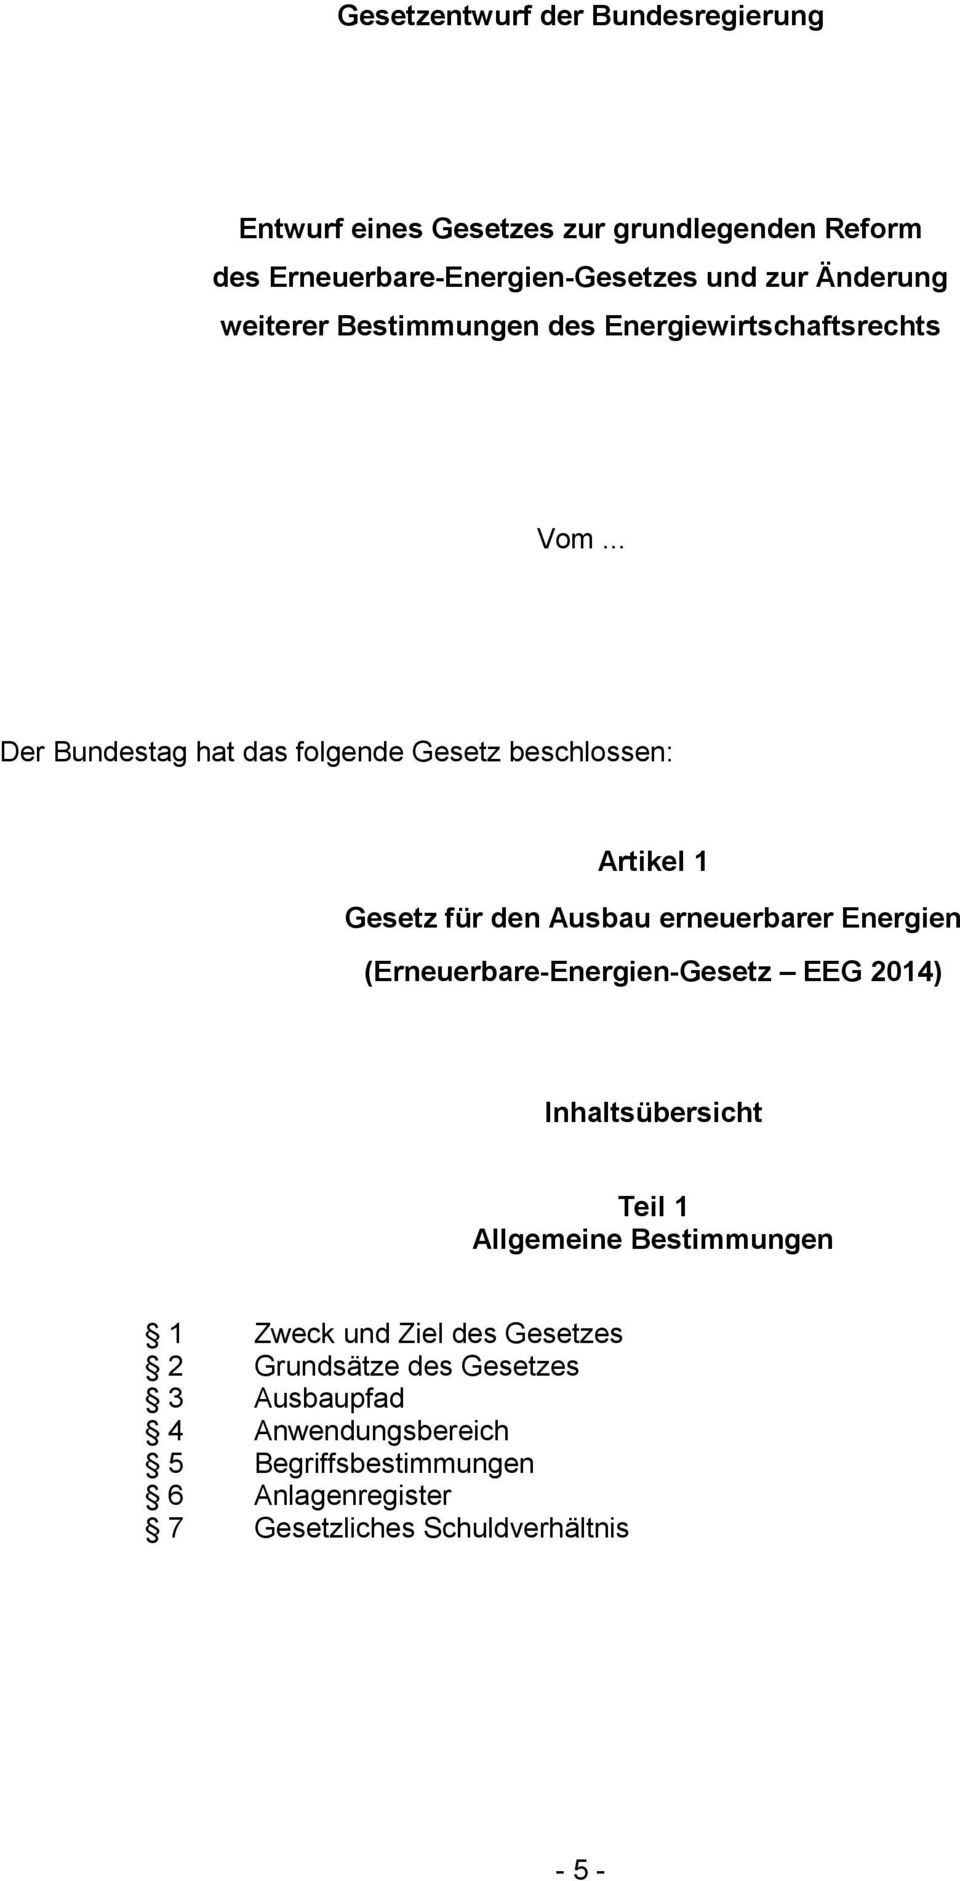 .. Der Bundestag hat das folgende Gesetz beschlossen: Artikel 1 Gesetz für den Ausbau erneuerbarer Energien (Erneuerbare-Energien-Gesetz